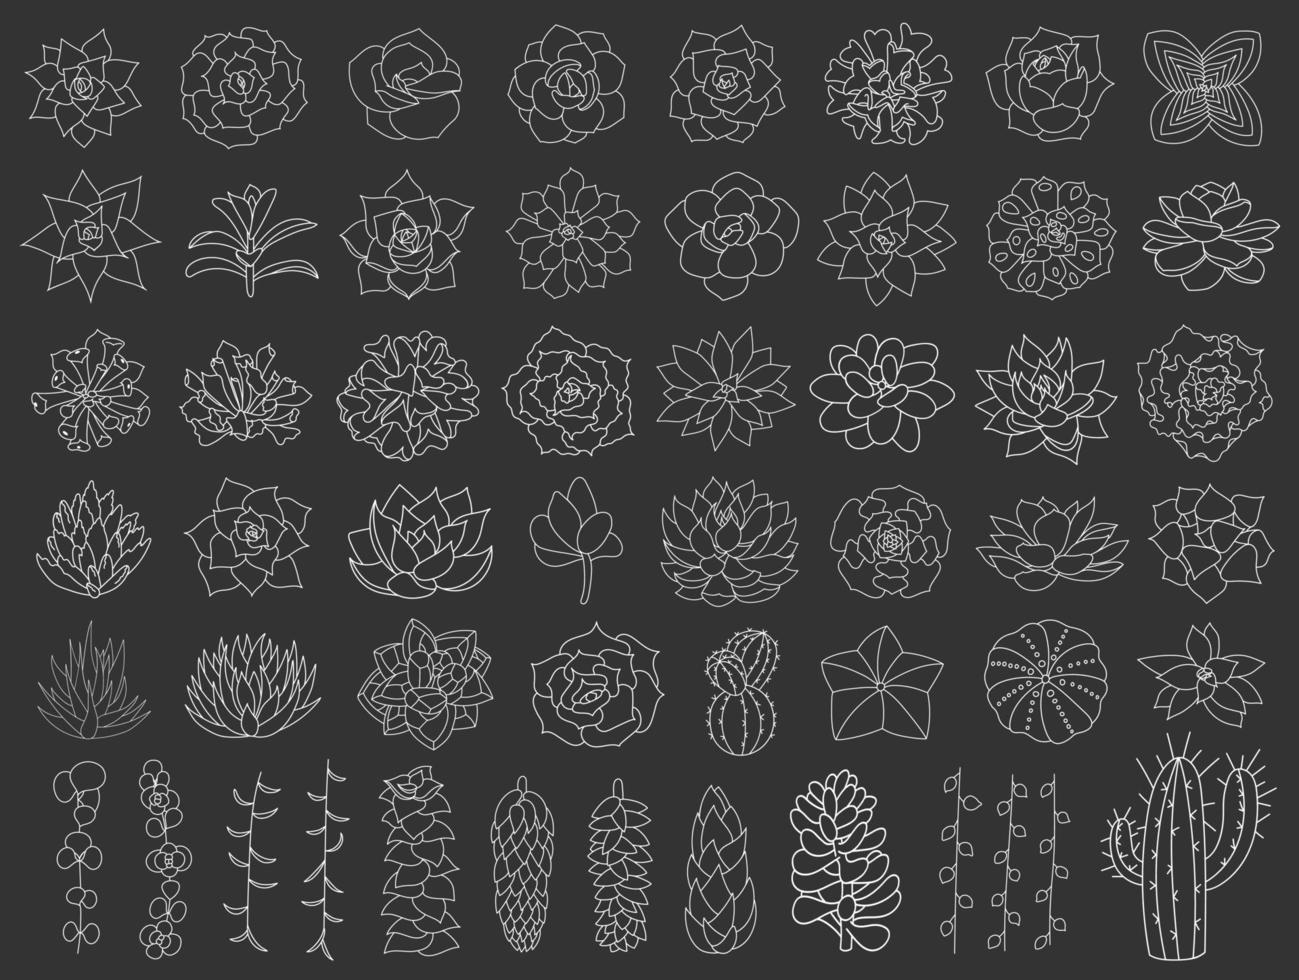 conjunto de vetores de suculentas e cactos. ilustração de flor do deserto desenhada à mão em estilo doodle. definir plantas com contorno branco. suculentas de silhueta em um fundo preto. echeveria, aloe e cacto